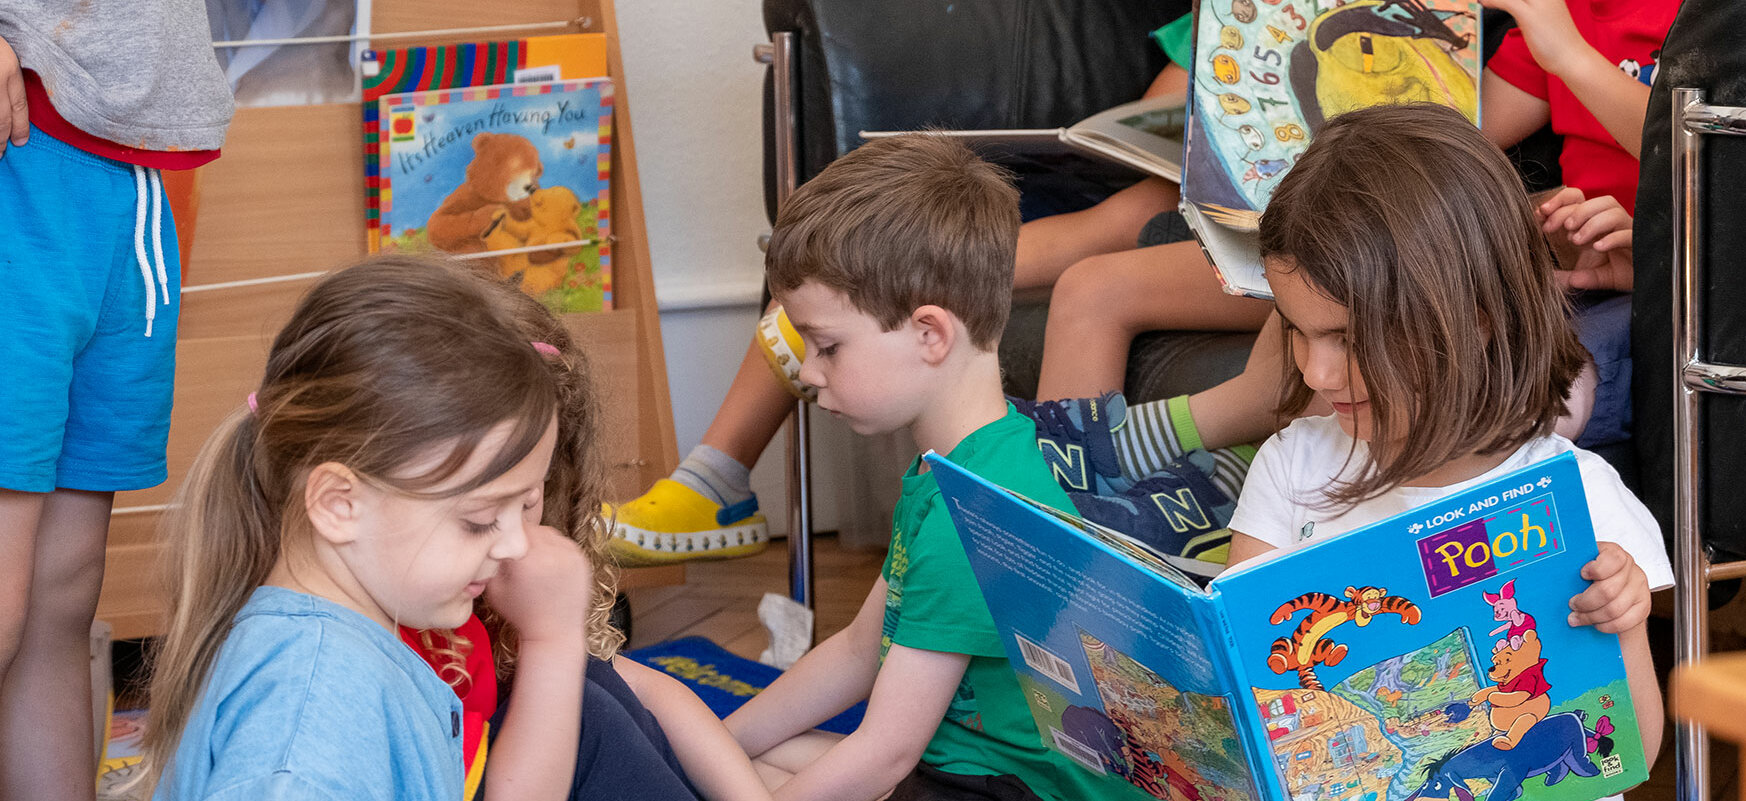 Kindergartenkinder sind in der Bibliothek. Ein kleiner Junge ist im Vordergrund, er öffnet ein Buch.	